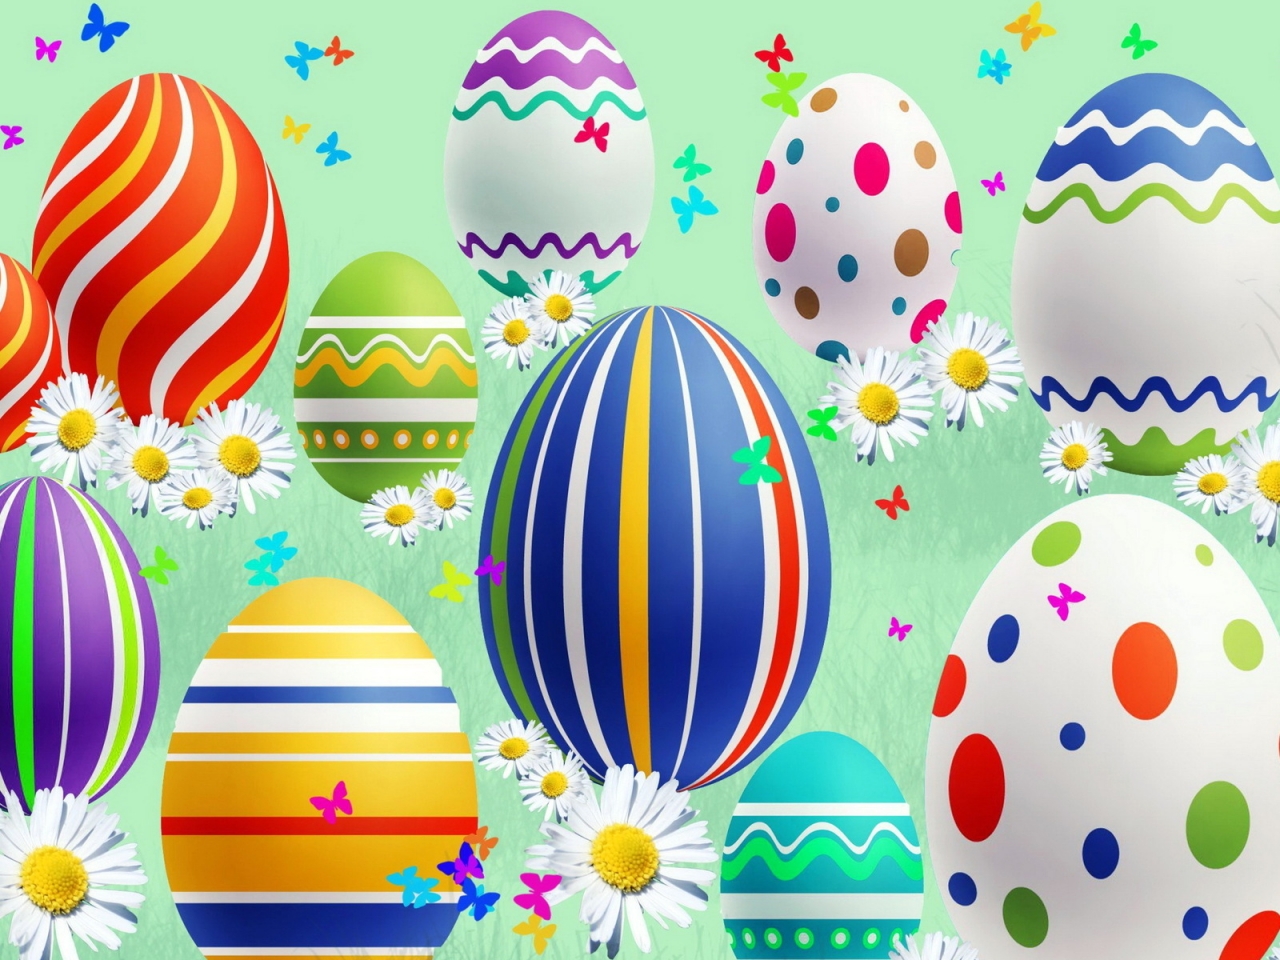 Lovely Easter Eggs for 1280 x 960 resolution